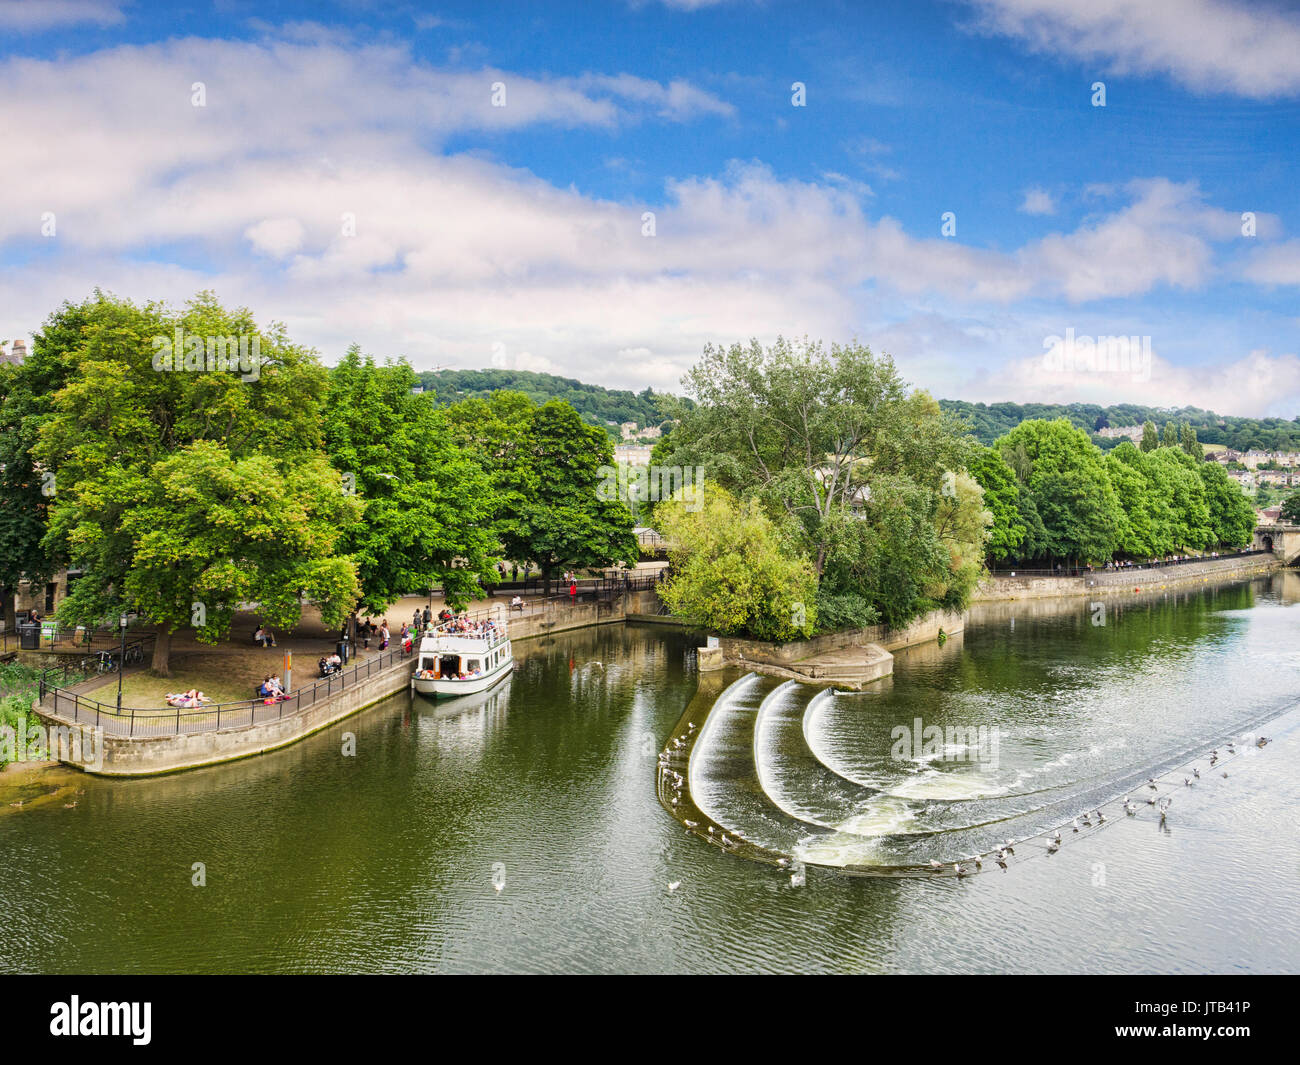 El 8 de julio de 2017: Bath, Somerset, Inglaterra, Reino Unido - Pulteney Weir, uno de los atractivos de la ciudad, y un placer barco anclado en las cercanías. Foto de stock